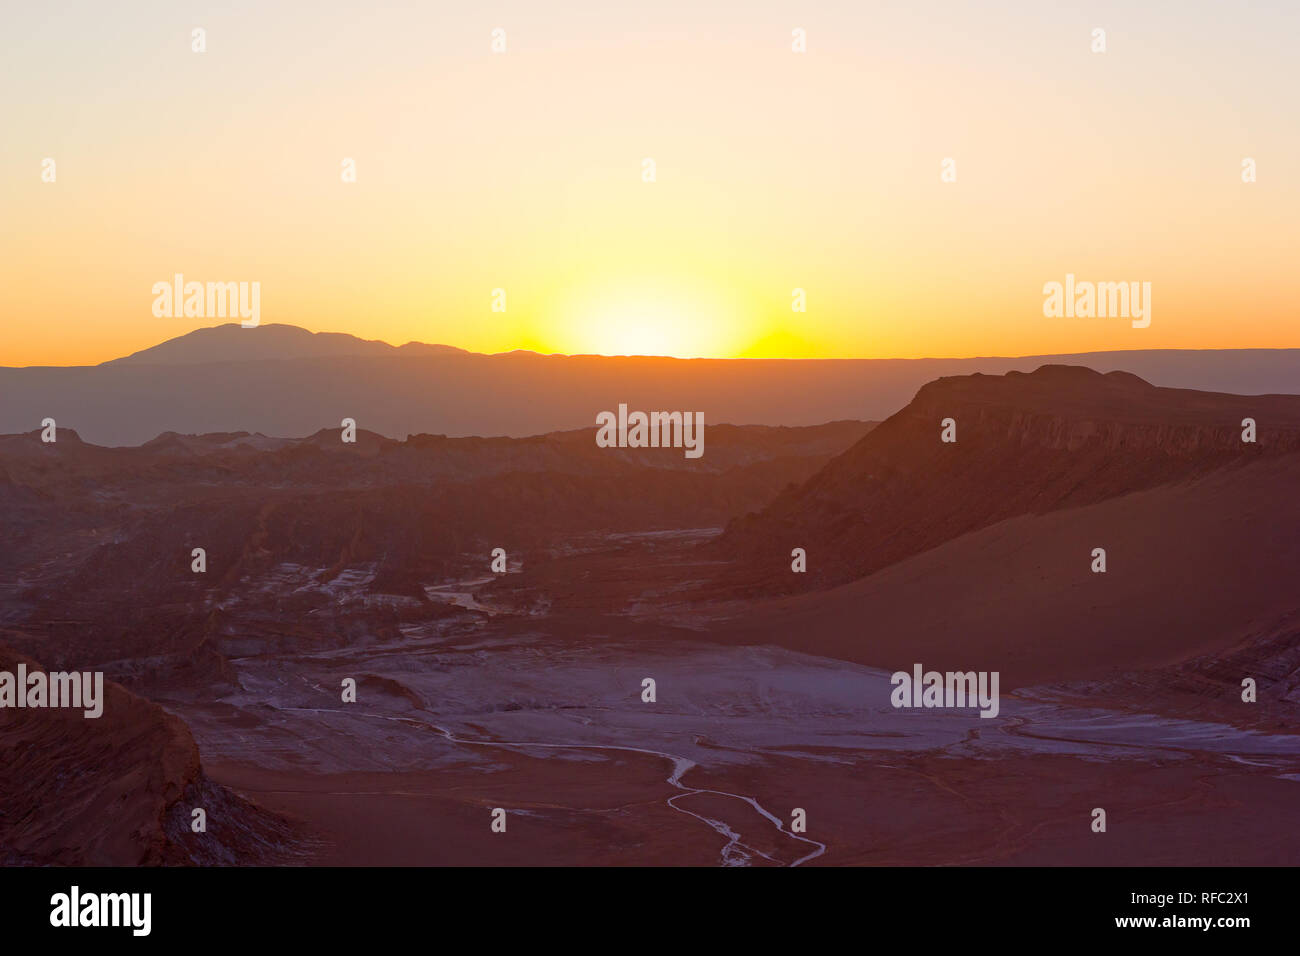 Helle Farben des Sonnenuntergangs über die Berge in der Ferne ridge in der Atacama-wüste, Chile, Südamerika. Panorama von der großen Höhe Wüste bei Sonnenuntergang Stockfoto